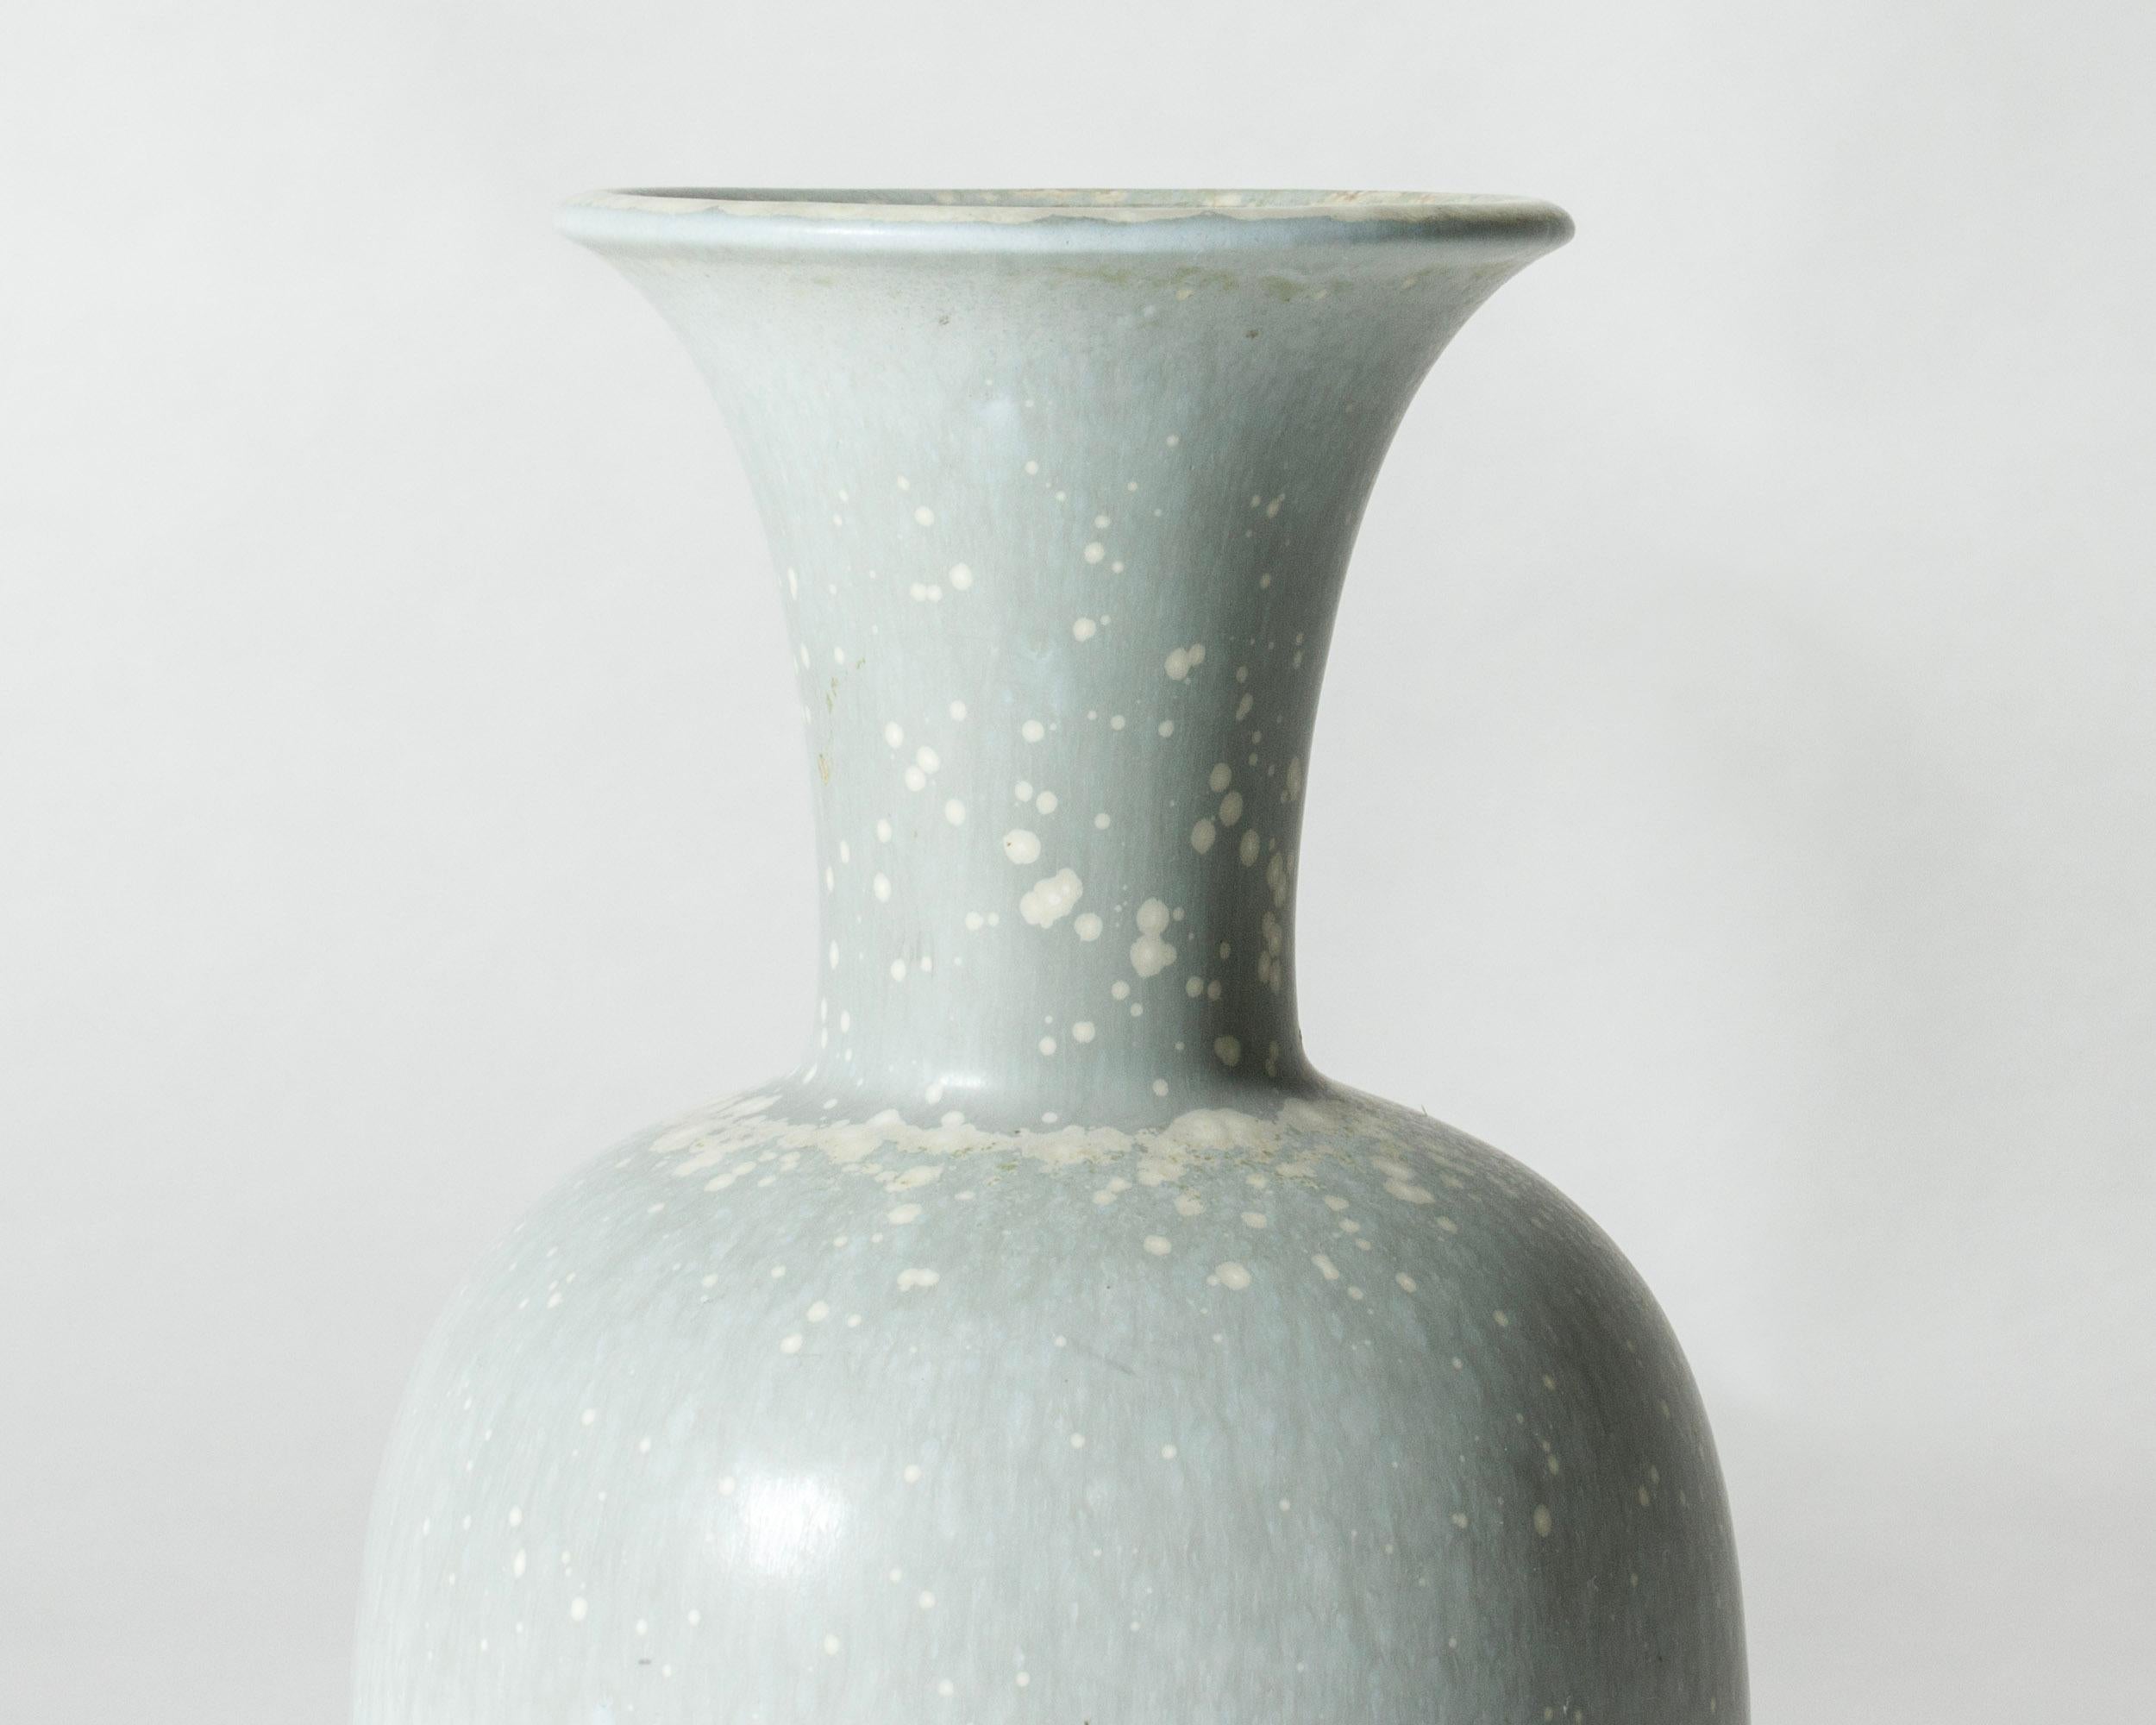 Magnifique grand vase en grès de Gunnar Nylund, de forme classique. Glaçure bleu pâle avec motif 